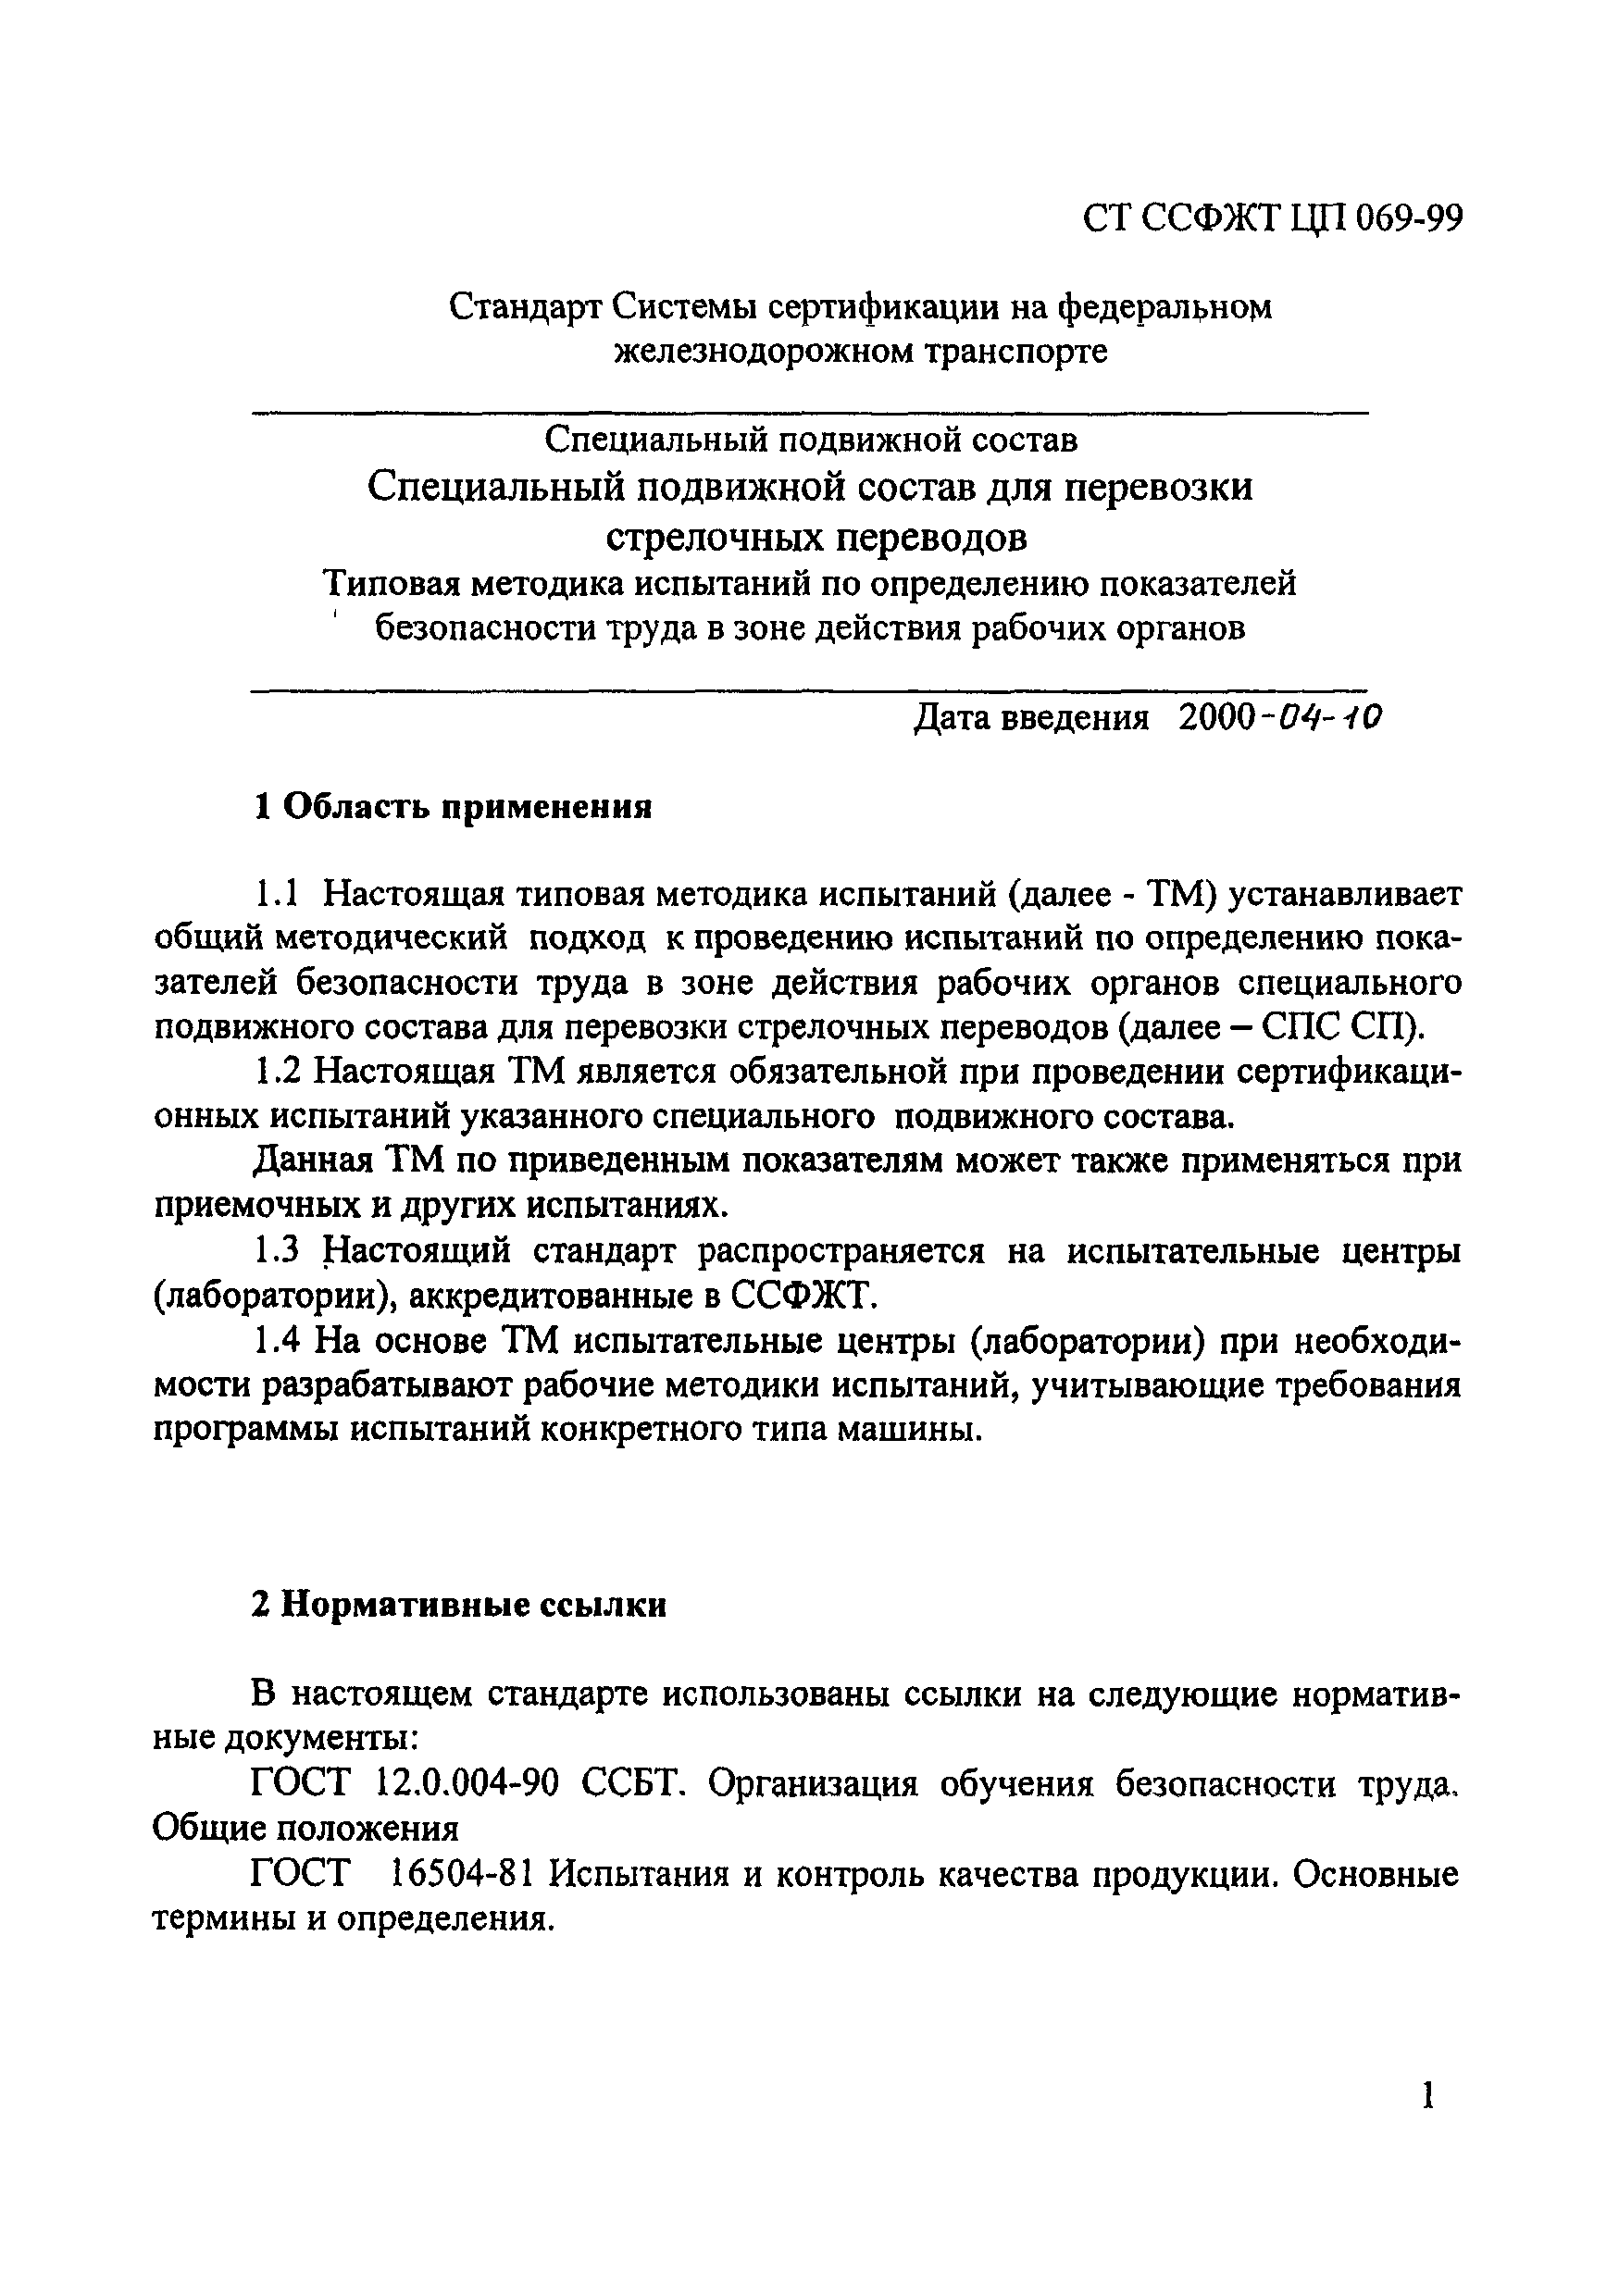 СТ ССФЖТ ЦП 069-99